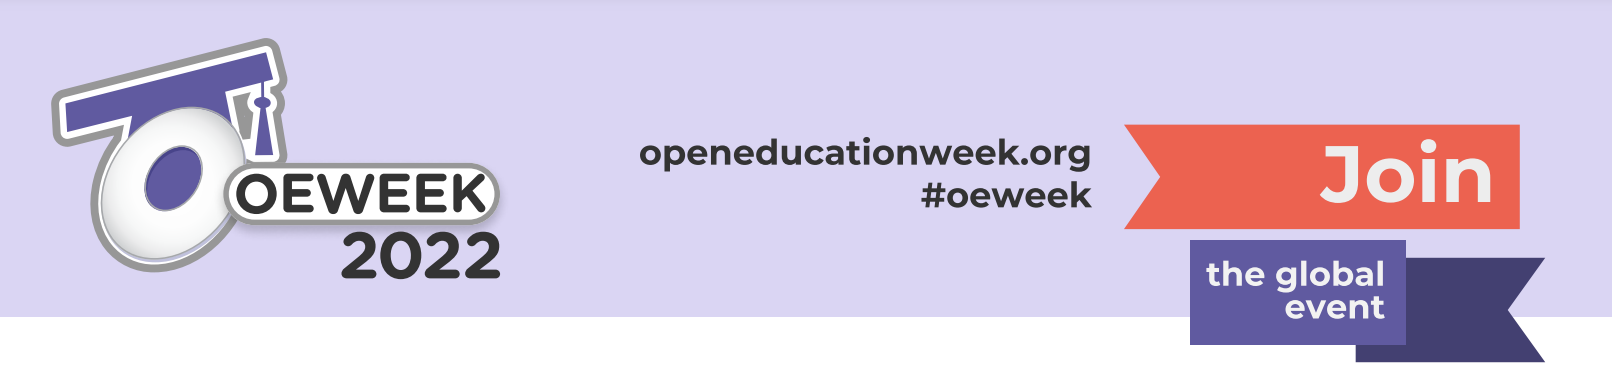 Open Education Week header logo